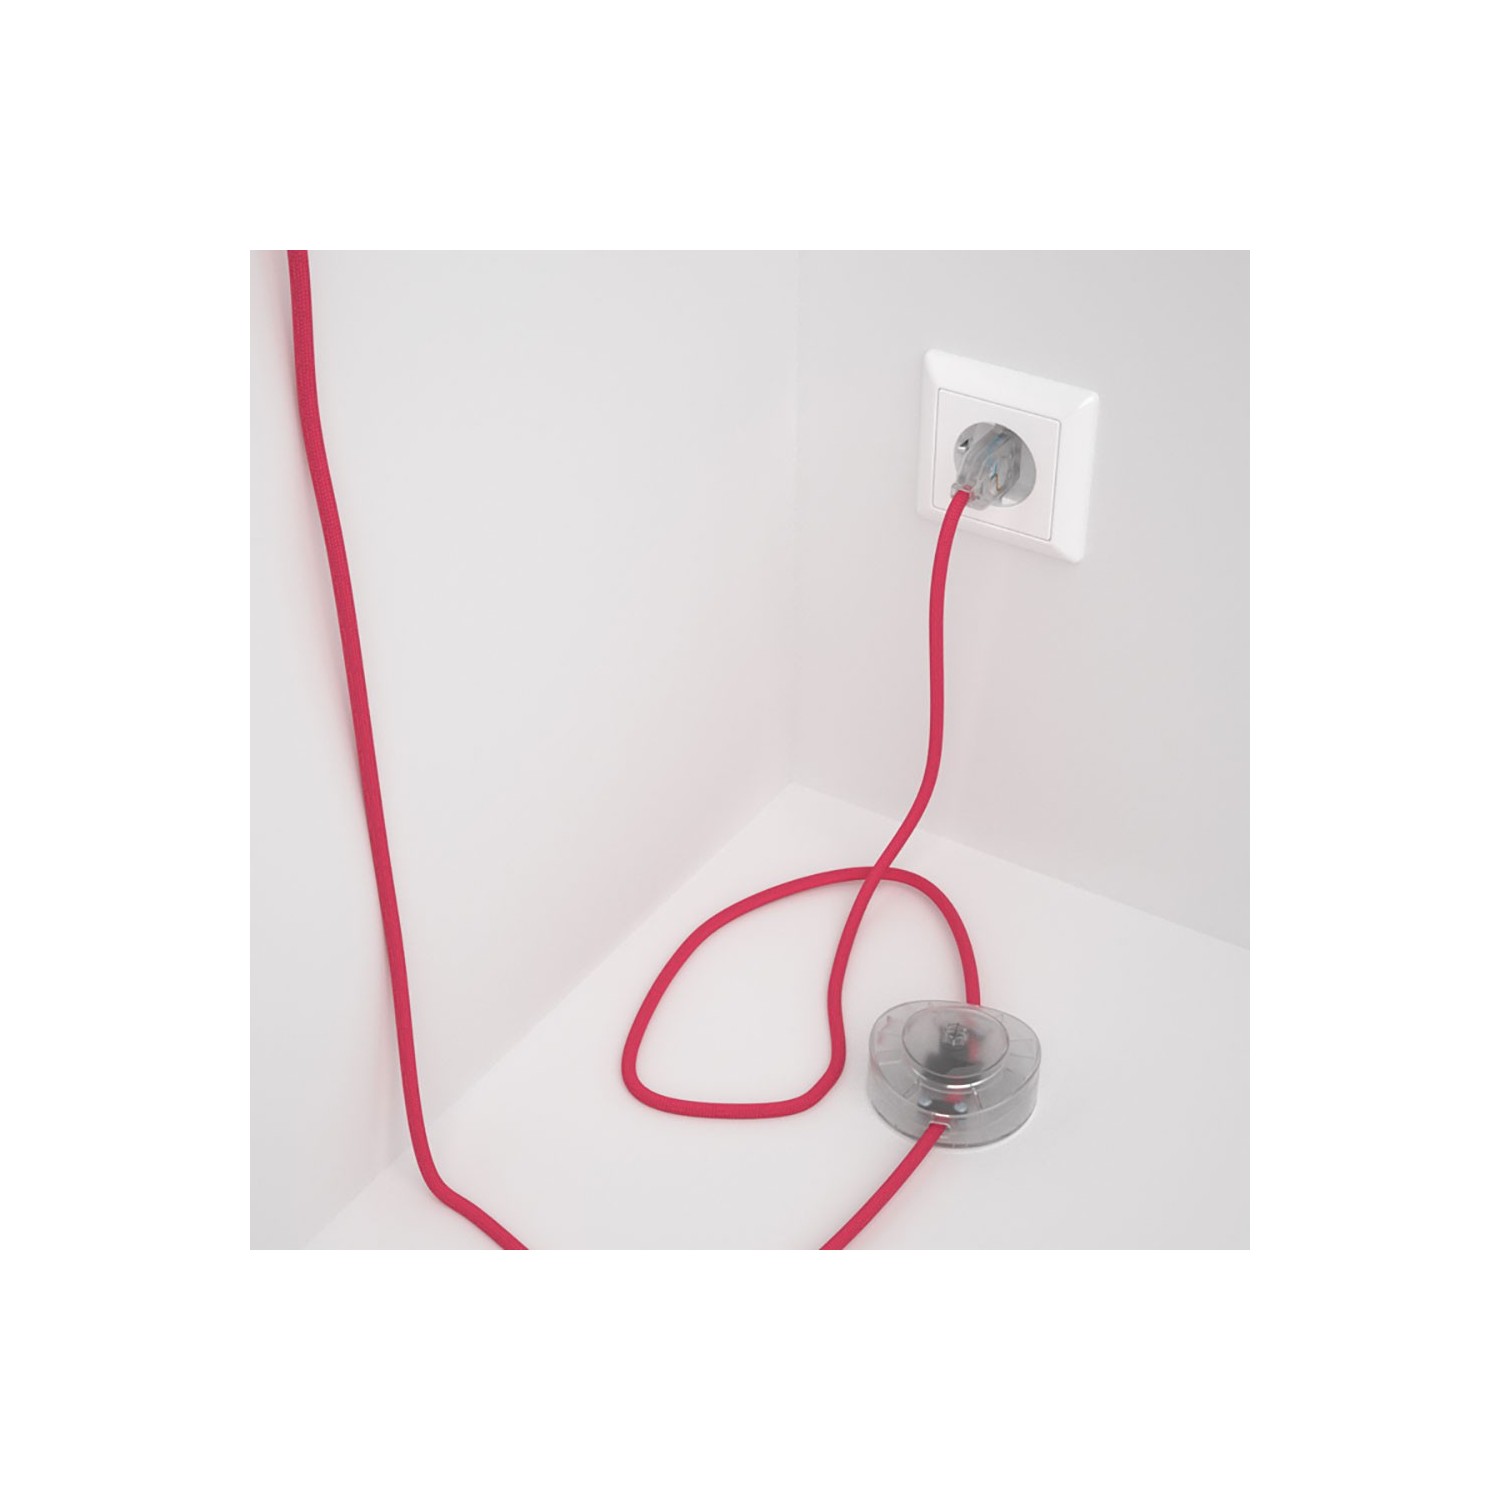 Cordon pour lampadaire, câble RM08 Effet Soie Fuchsia 3 m. Choisissez la couleur de la fiche et de l'interrupteur!